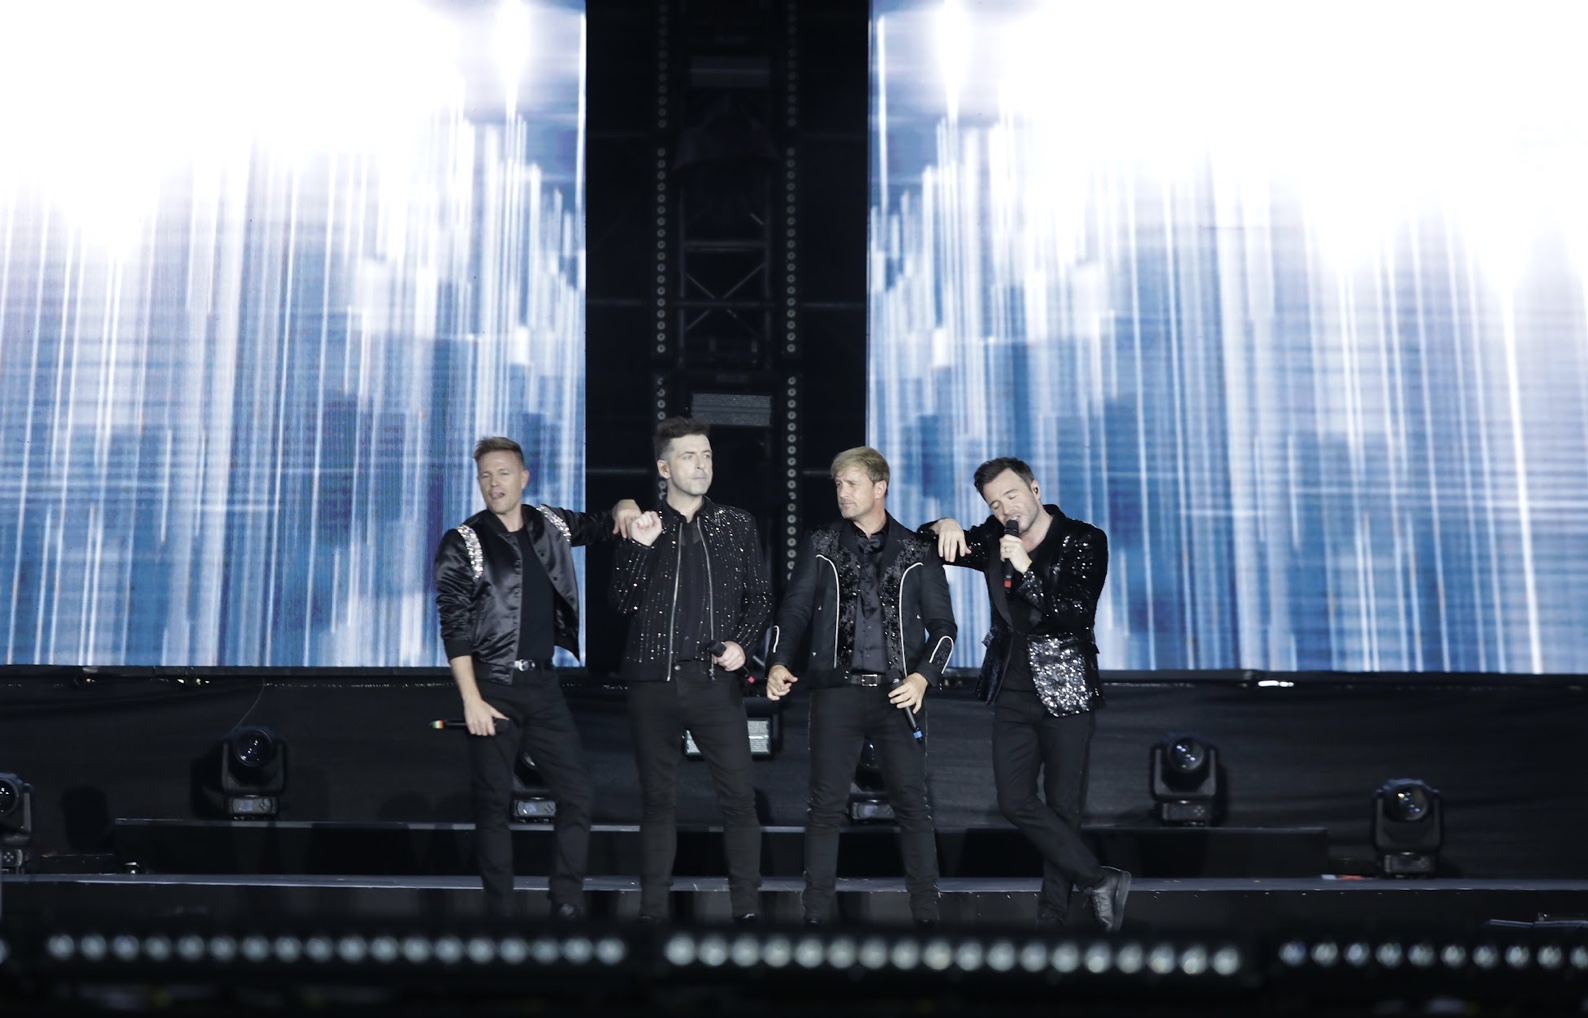 BTC concert Westlife xin lỗi khán giả vì sự cố lều kỹ thuật, sẽ khắc phục trong đêm diễn thứ hai - Ảnh 2.